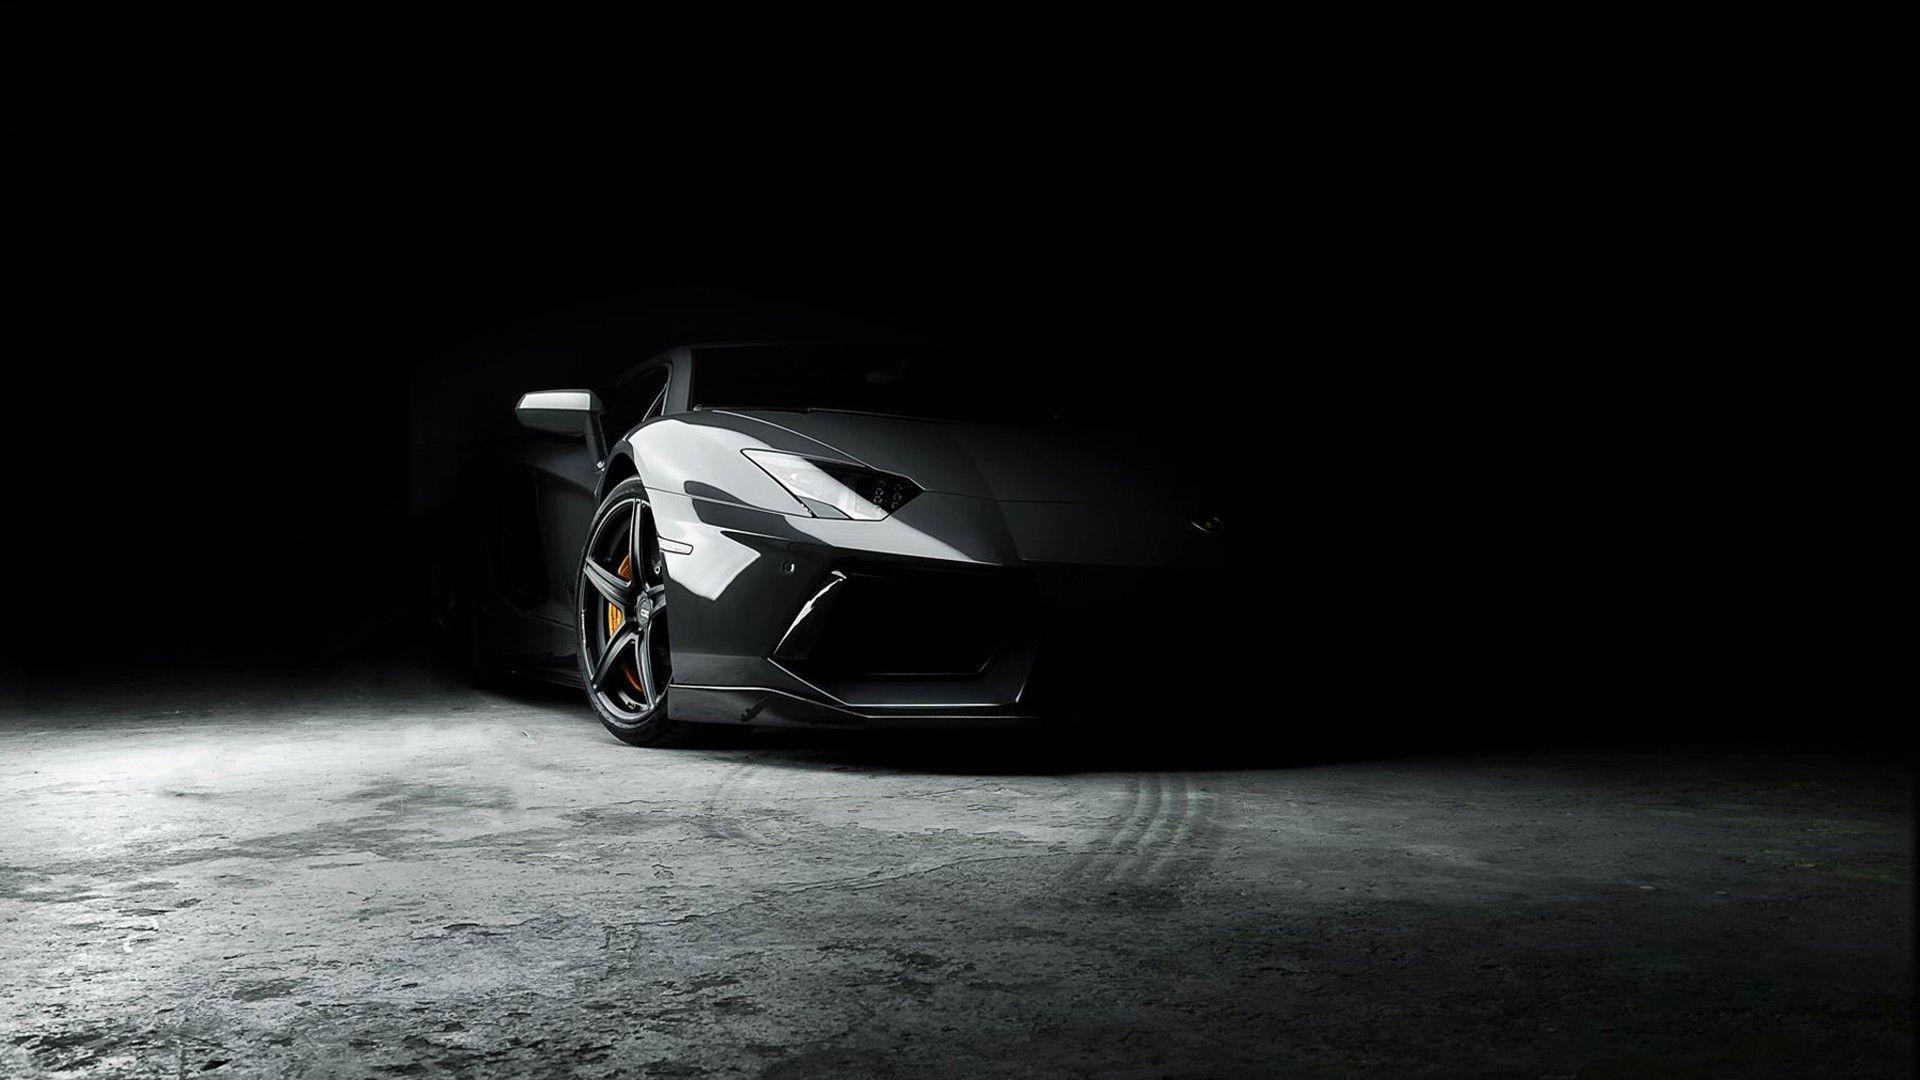 Lamborghini, Car, Black, Rims Wallpaper HD / Desktop and Mobile